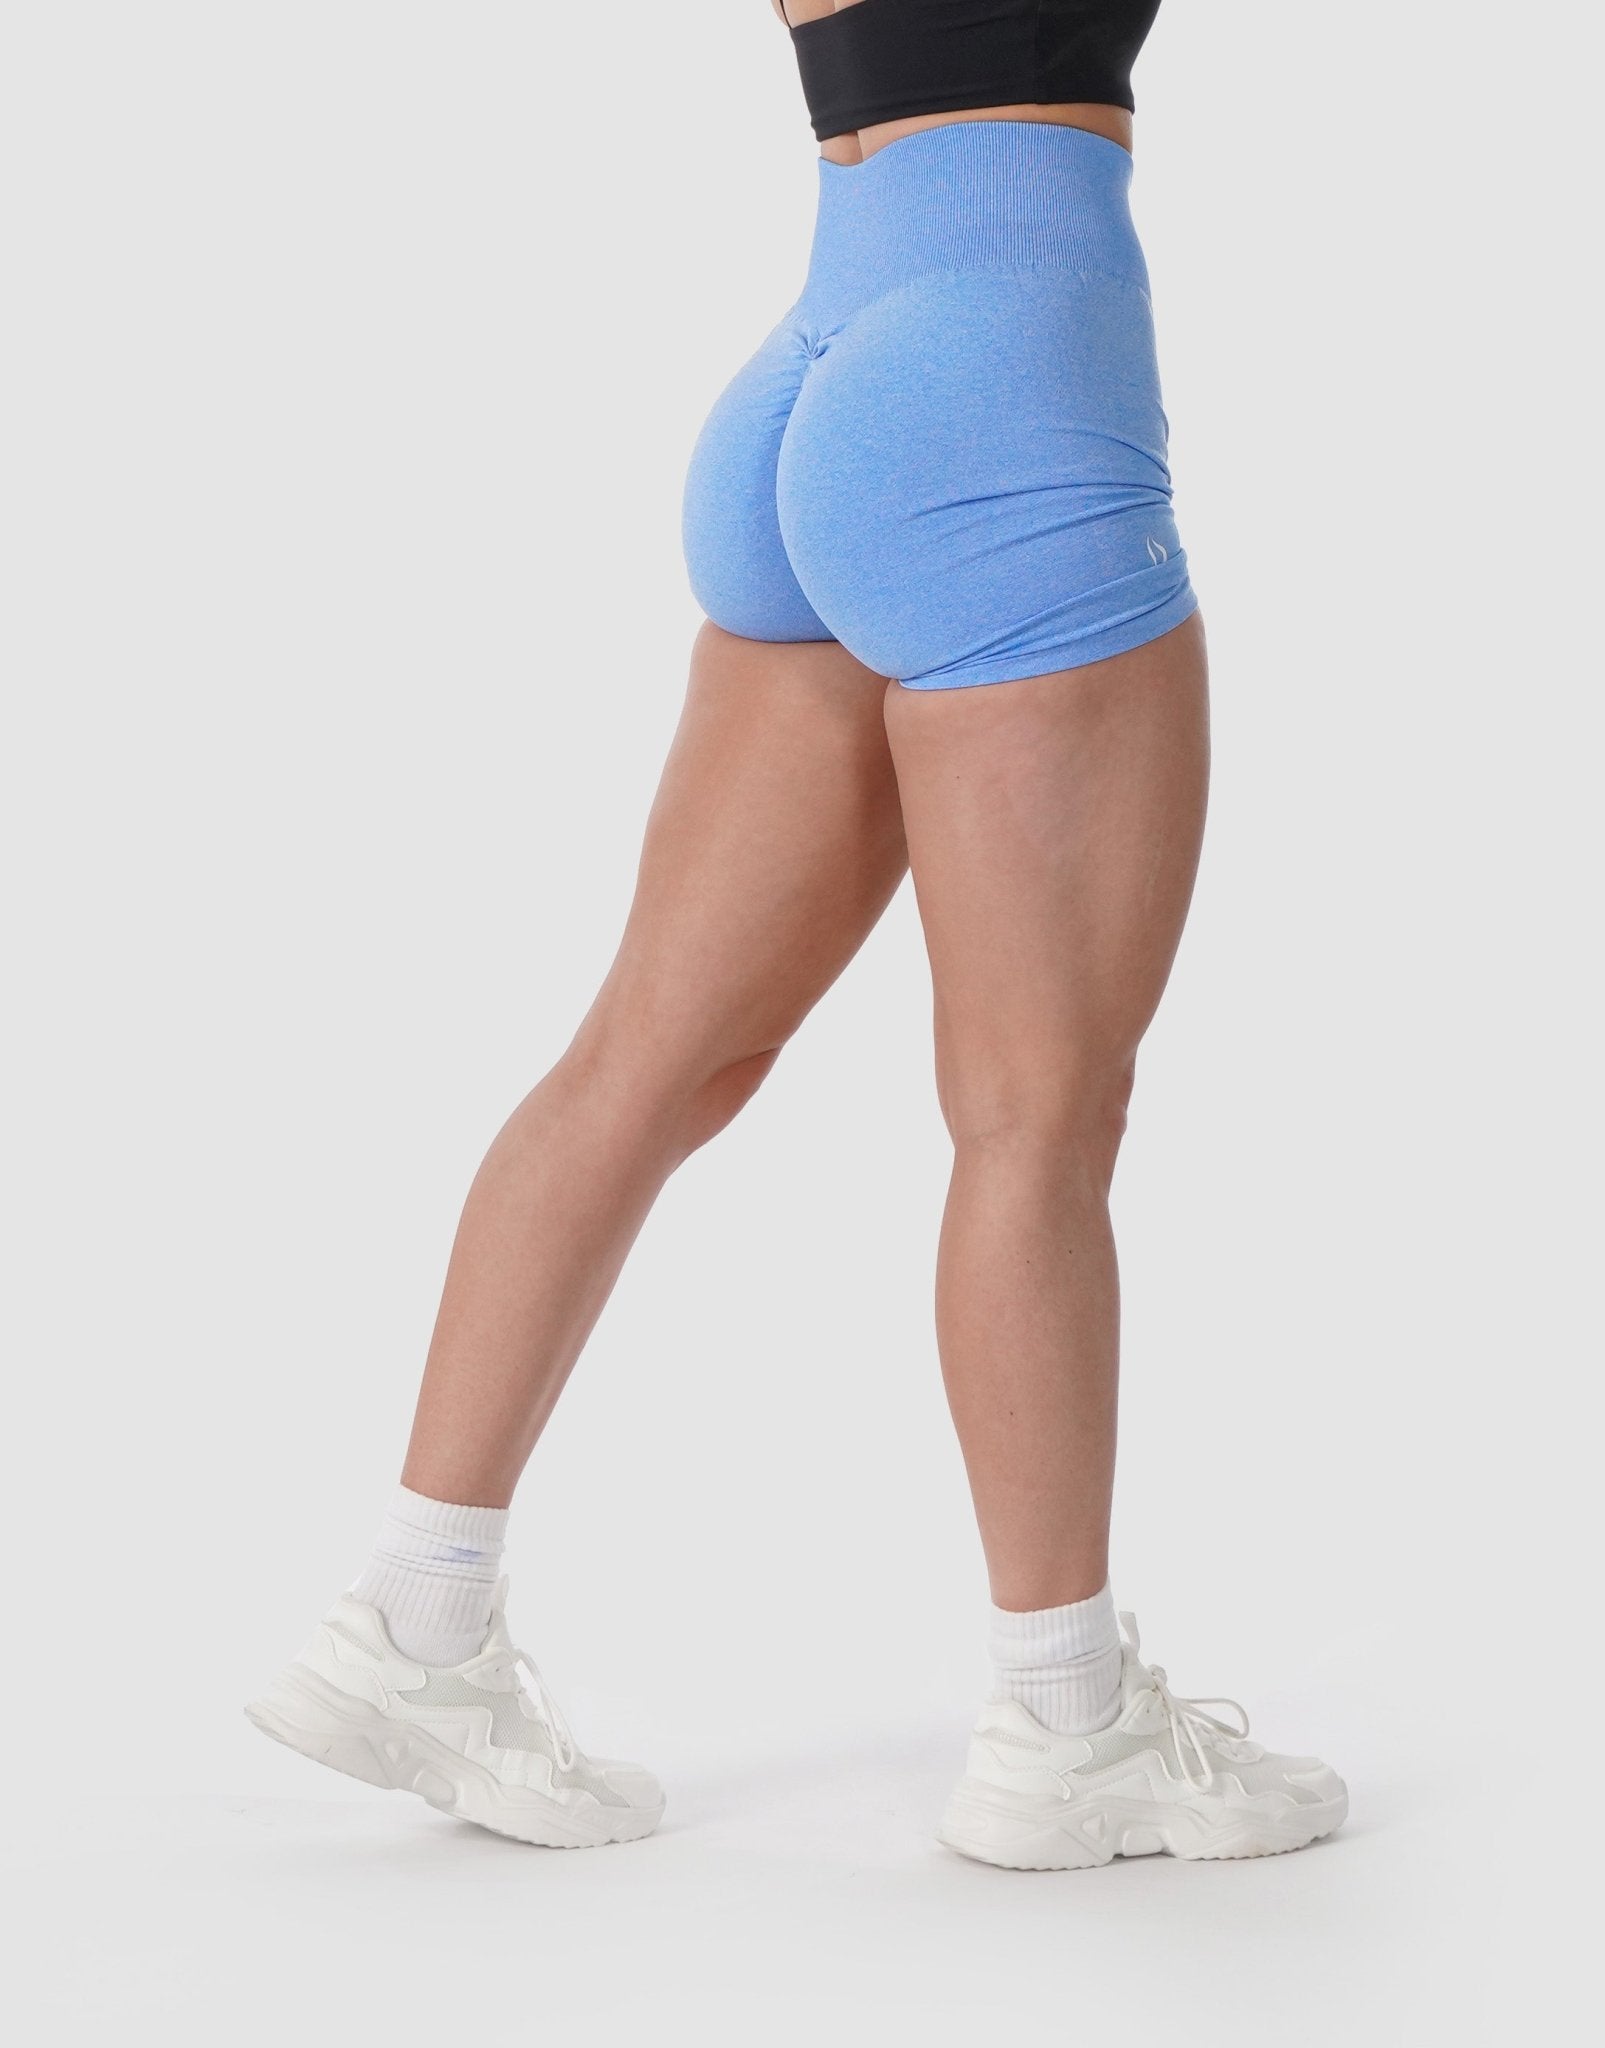 V-Waist Scrunch Butt Shorts